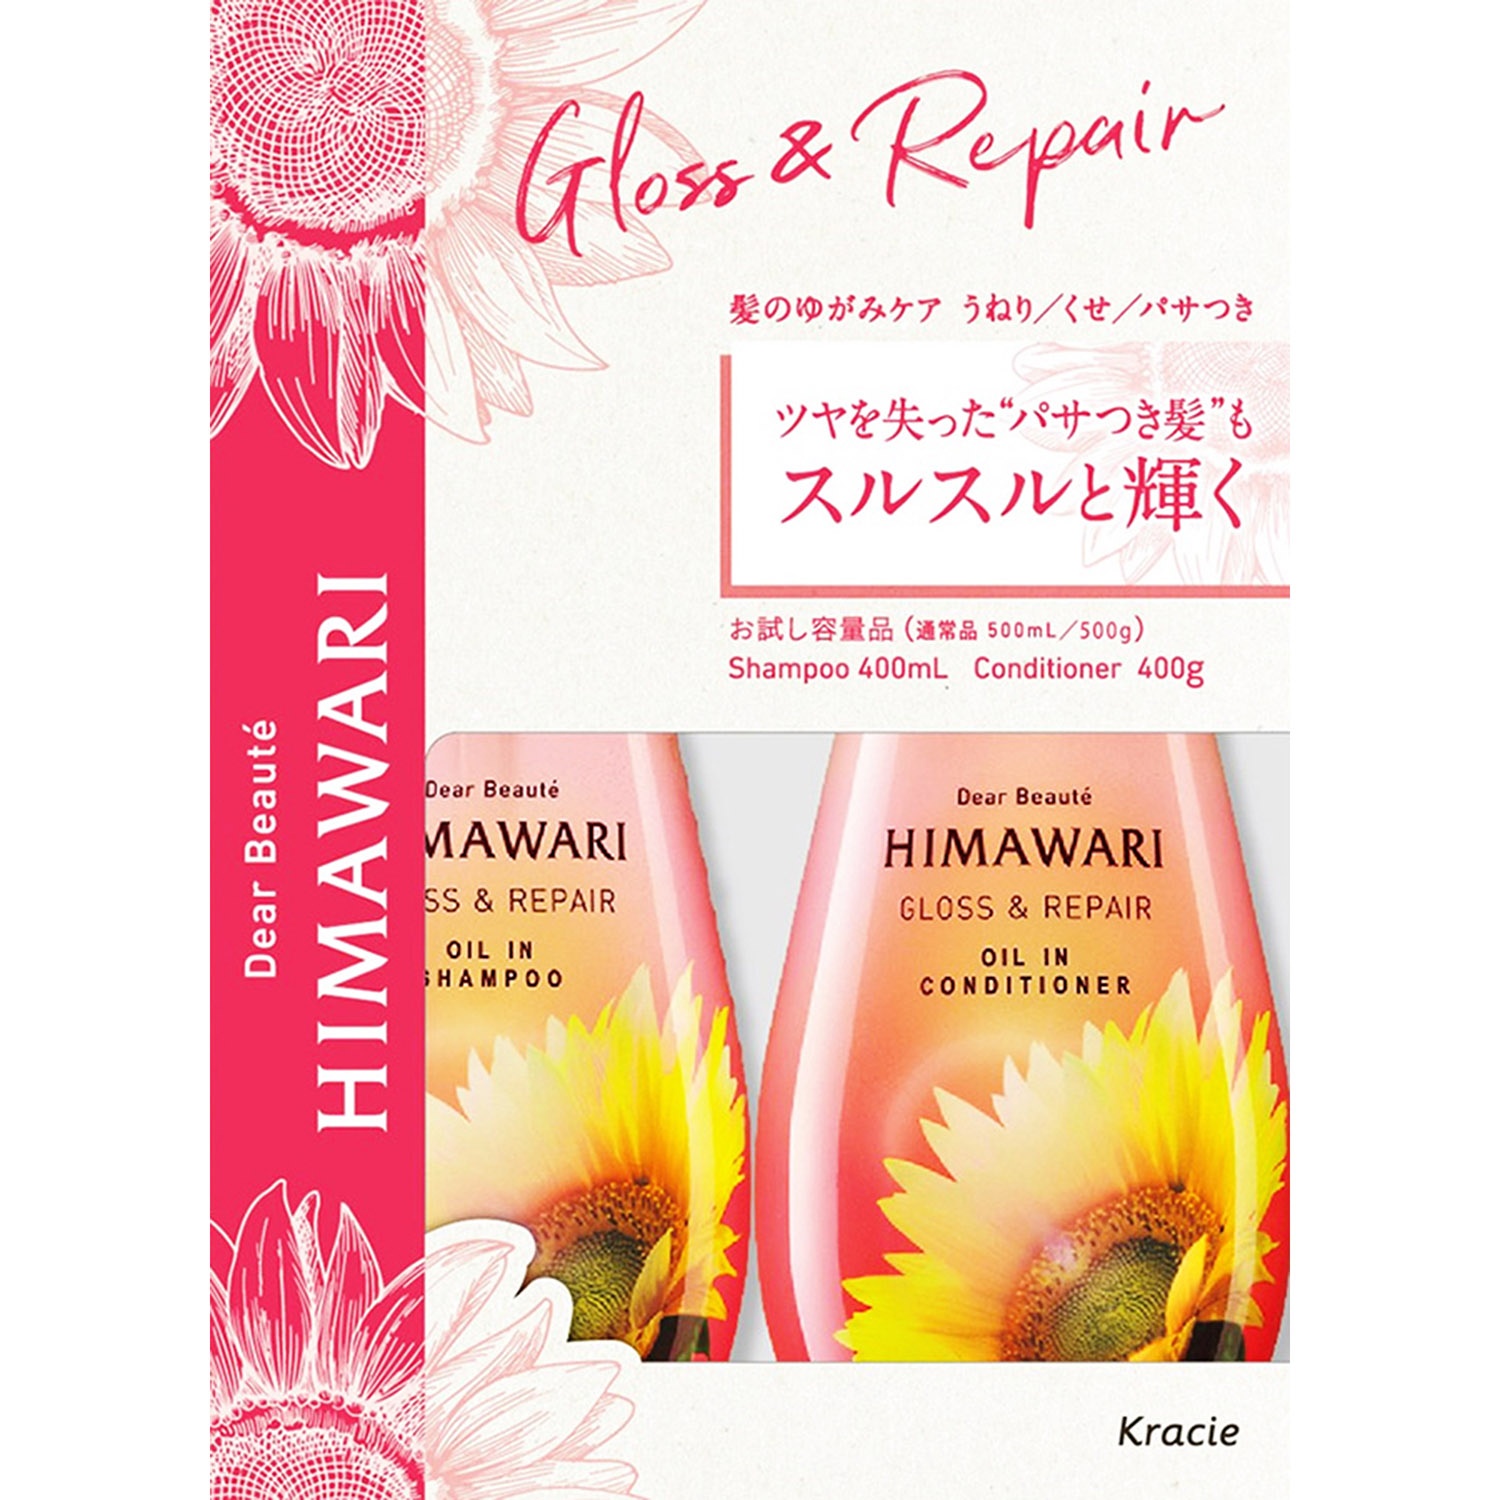 slide 1 of 1, Kracie Himawari Himawari Gloss Repair Shampoo&Cond Set, 1 ct